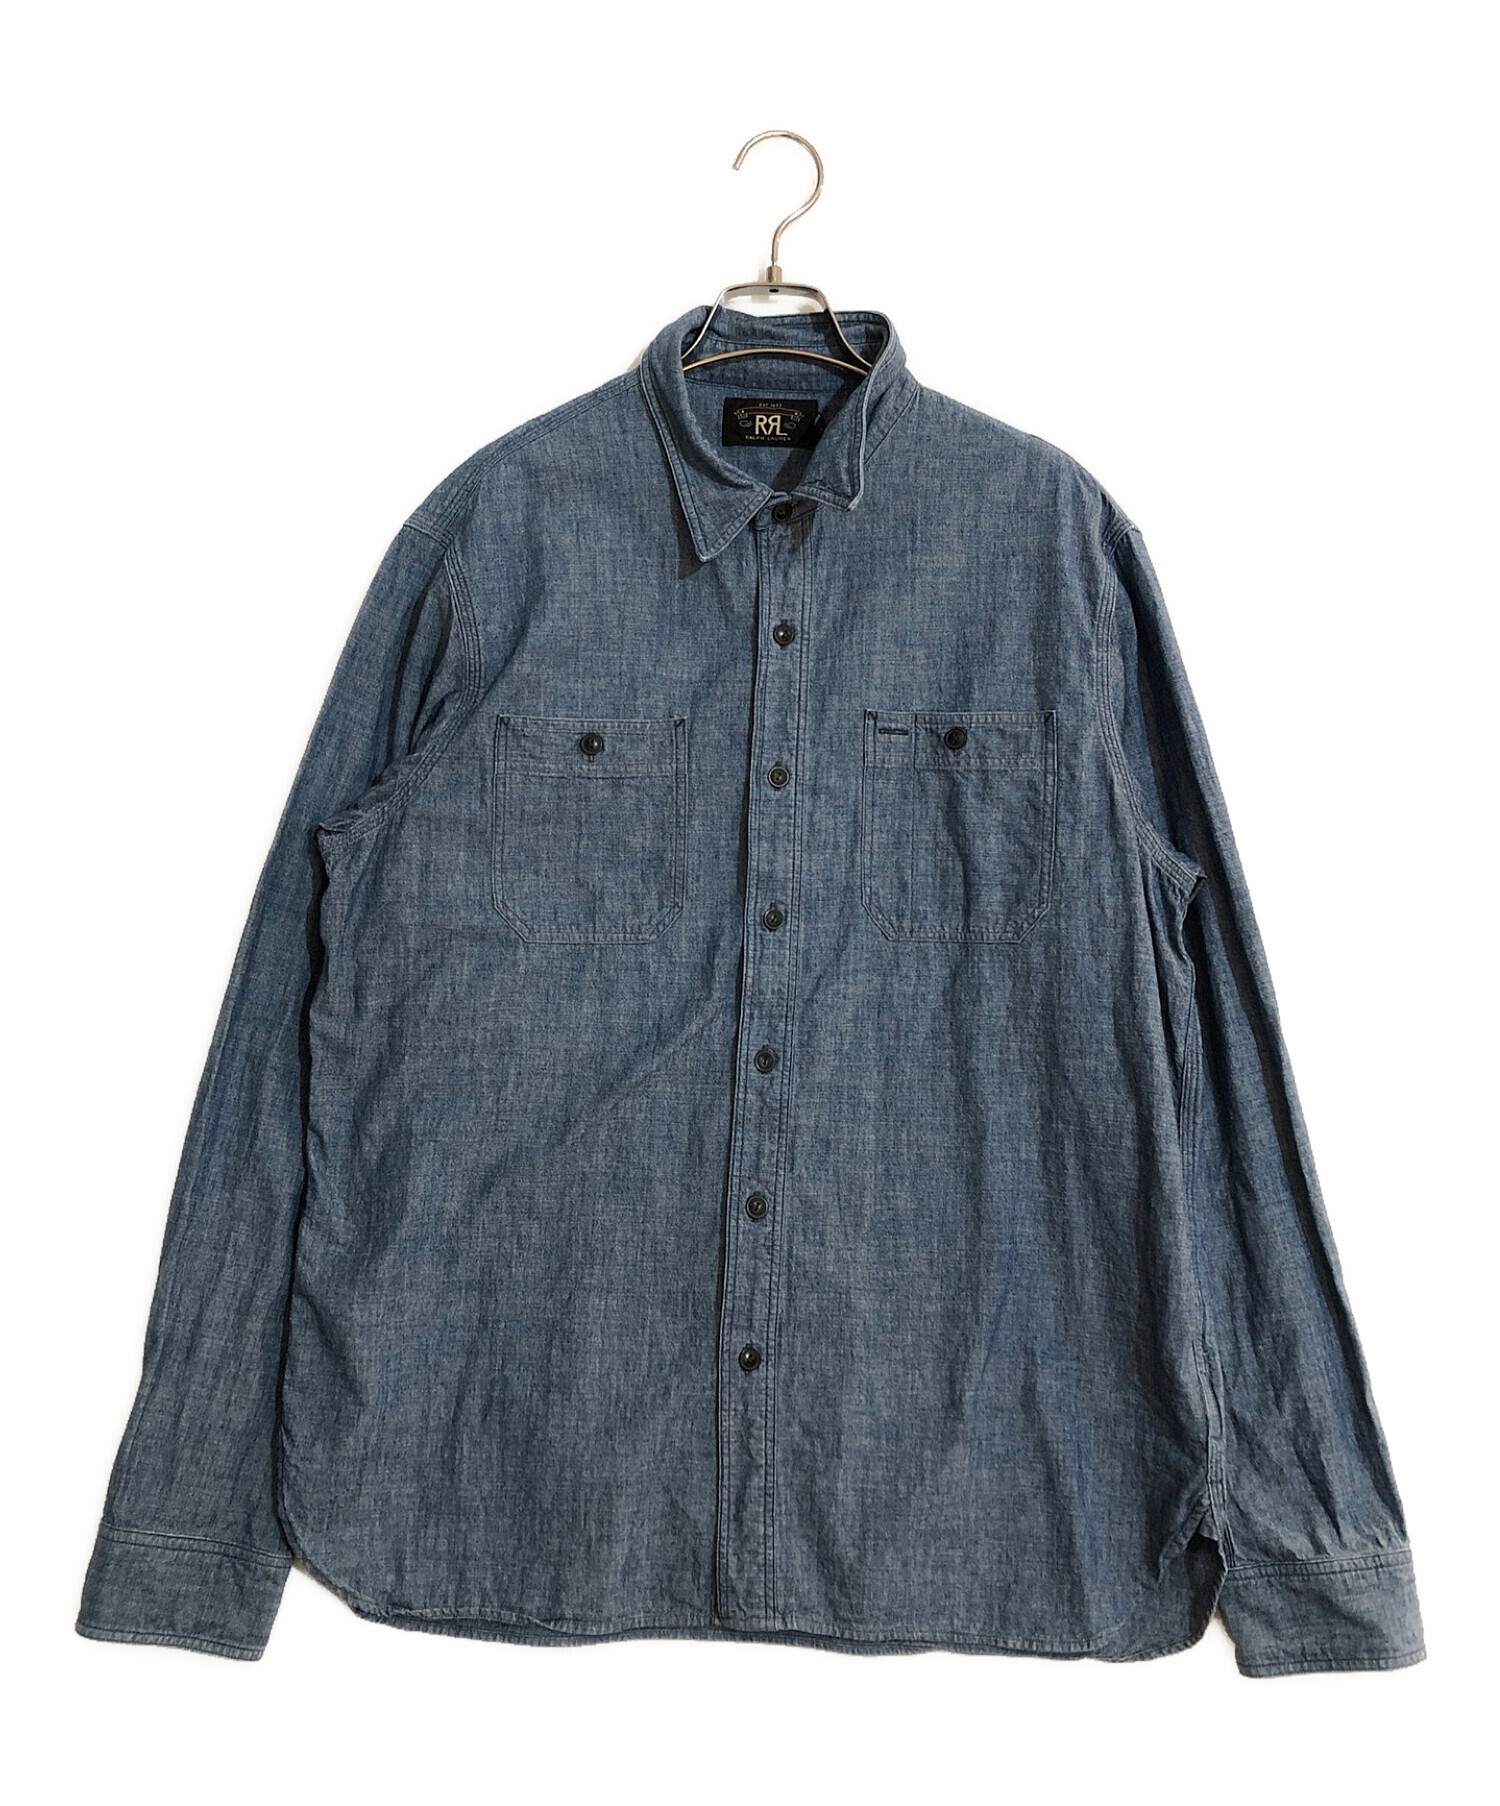 RRL (ダブルアールエル) Cotton Work shirt/コットン ワーク シャツ ブルー サイズ:SIZE L